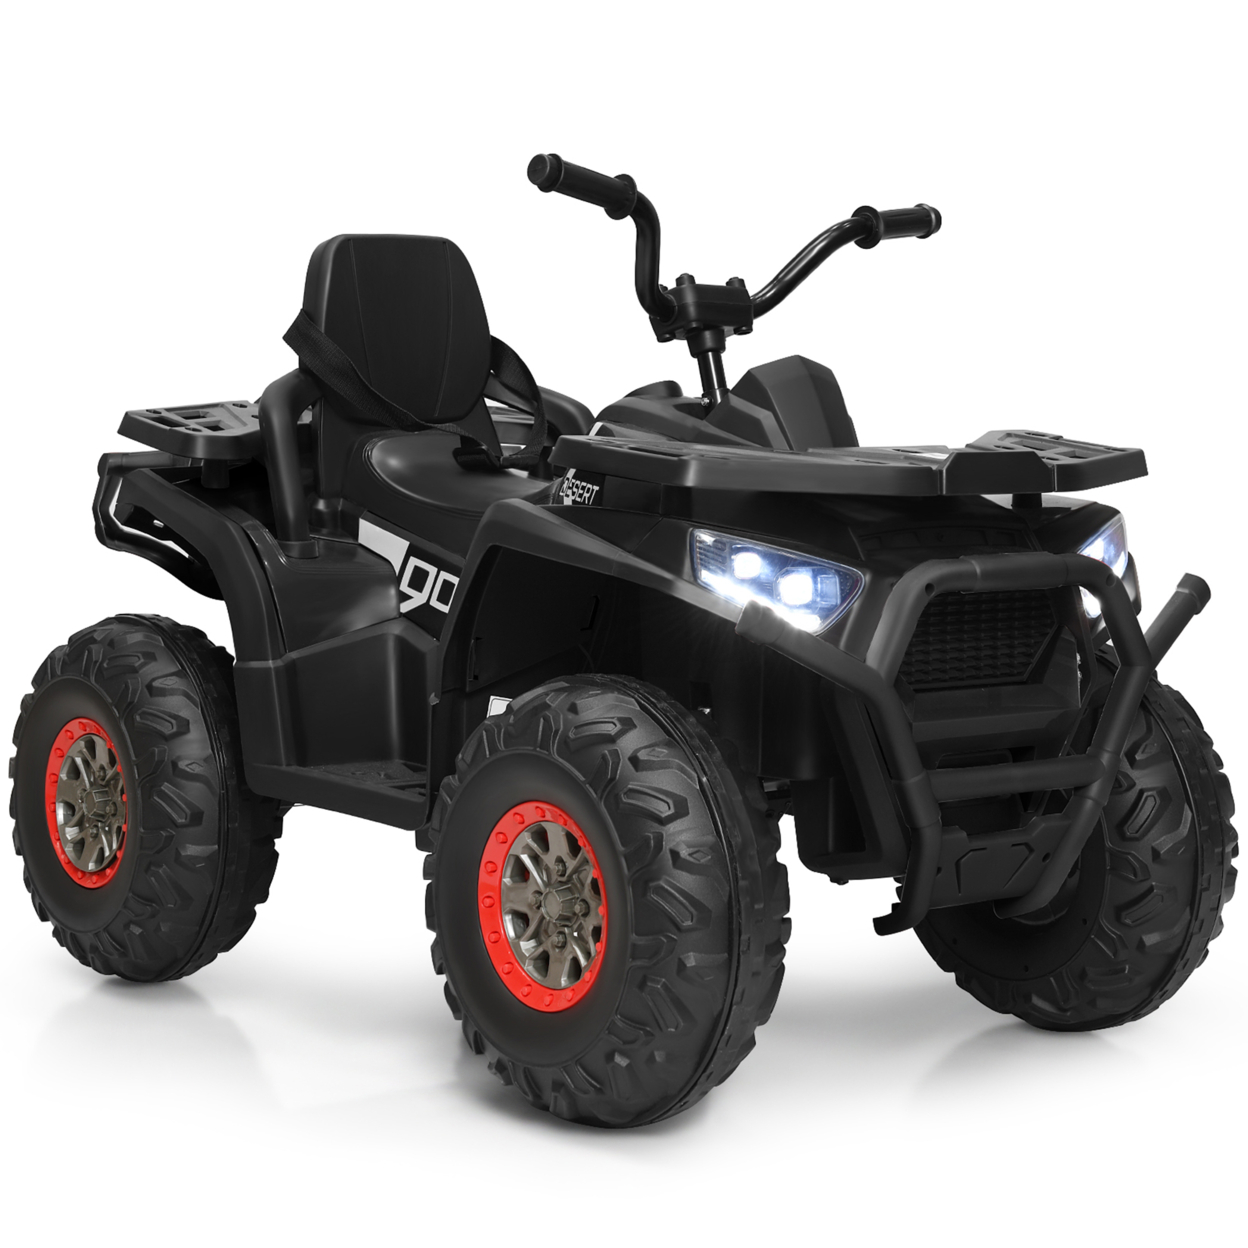 12V Electric Kids Ride On Car ATV 4-Wheeler Quad W/ LED Light Black/Red/White - Black